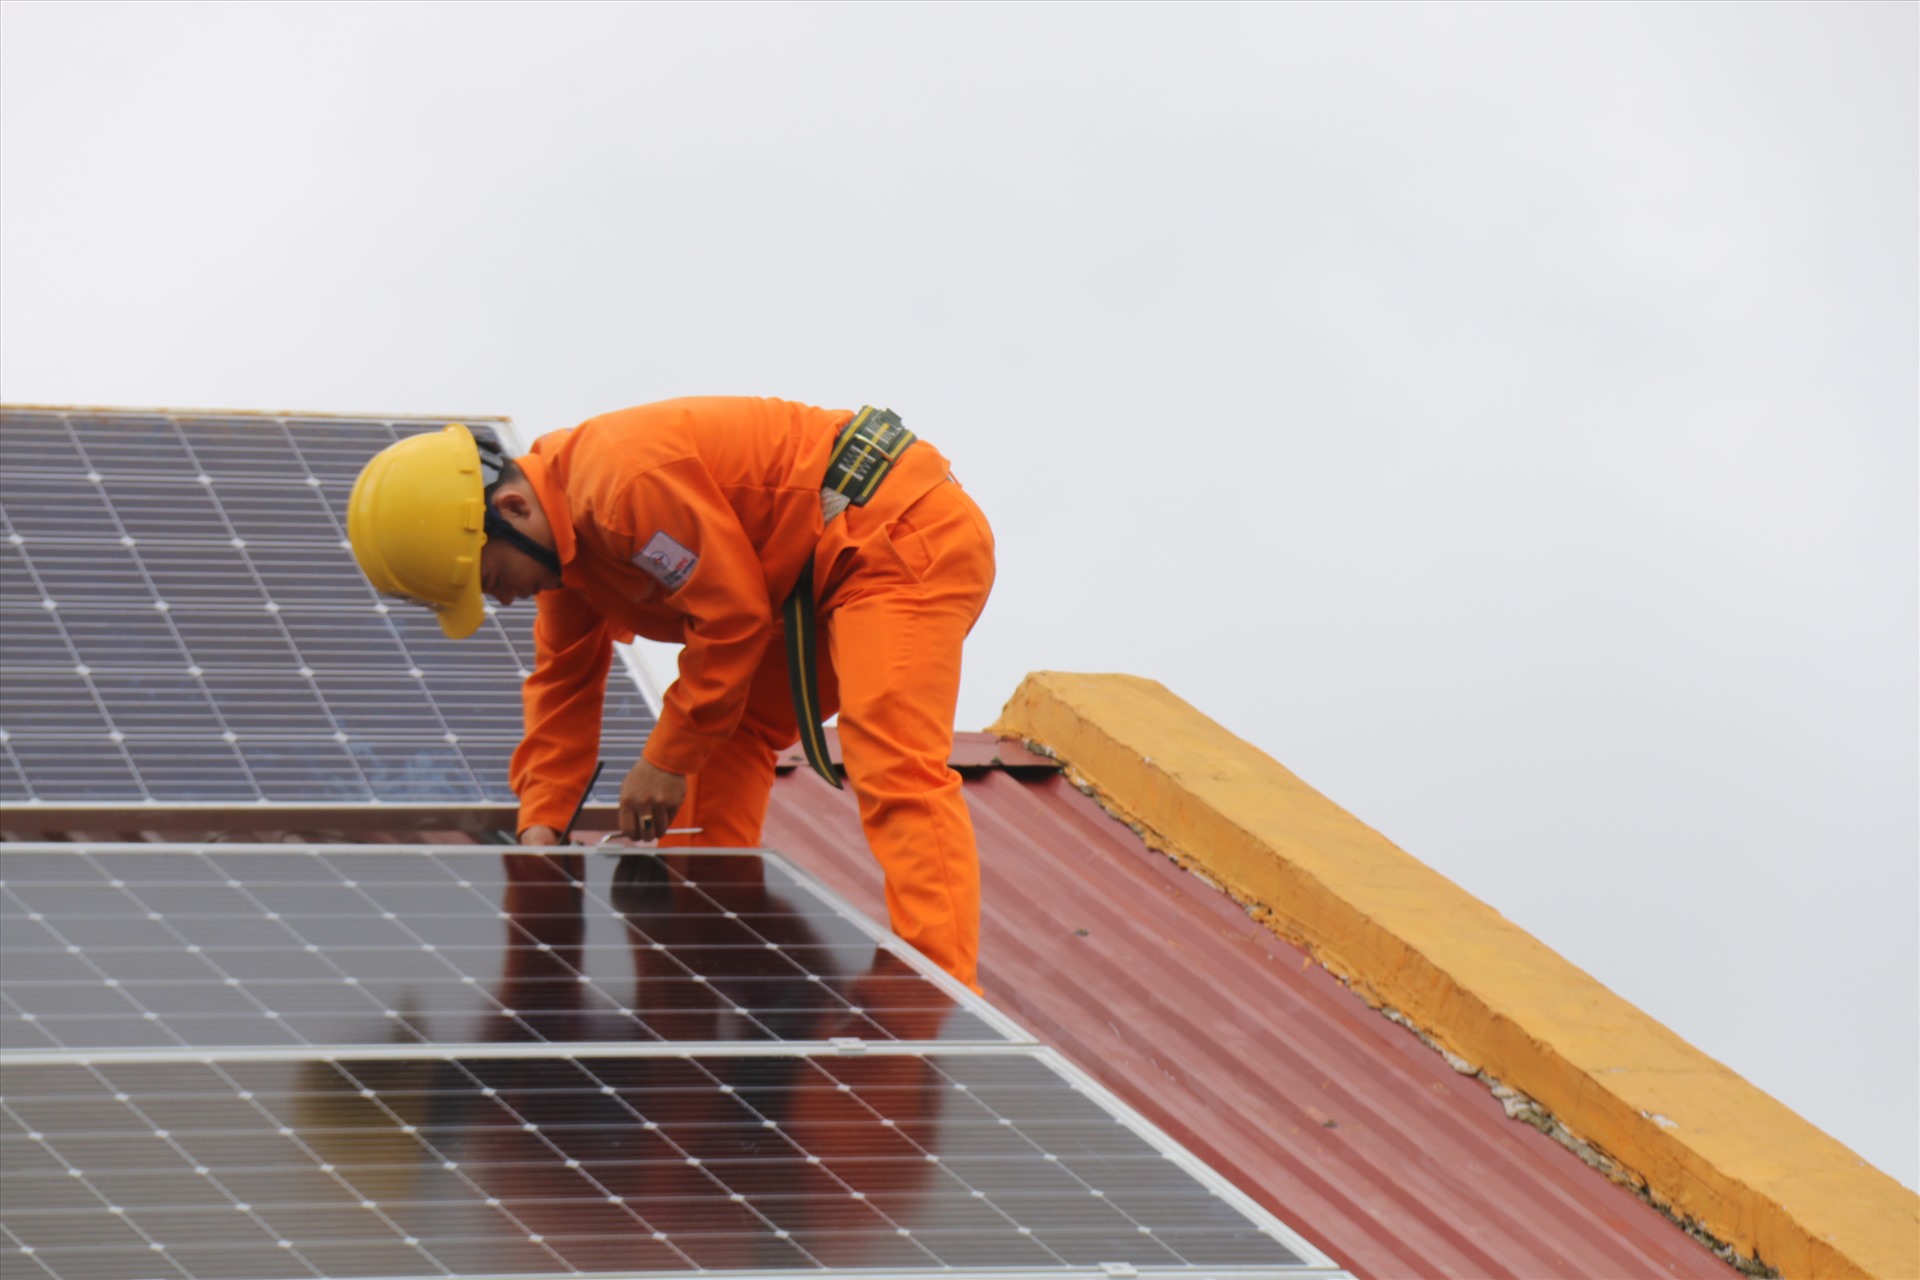 Hơn 100 dự án điện mặt trời trên mái nhà được ngành điện Đắk Nông thỏa thuận đấu nối và dự kiến đưa vào vận hành trong năm 2020. Ảnh: Tâm An